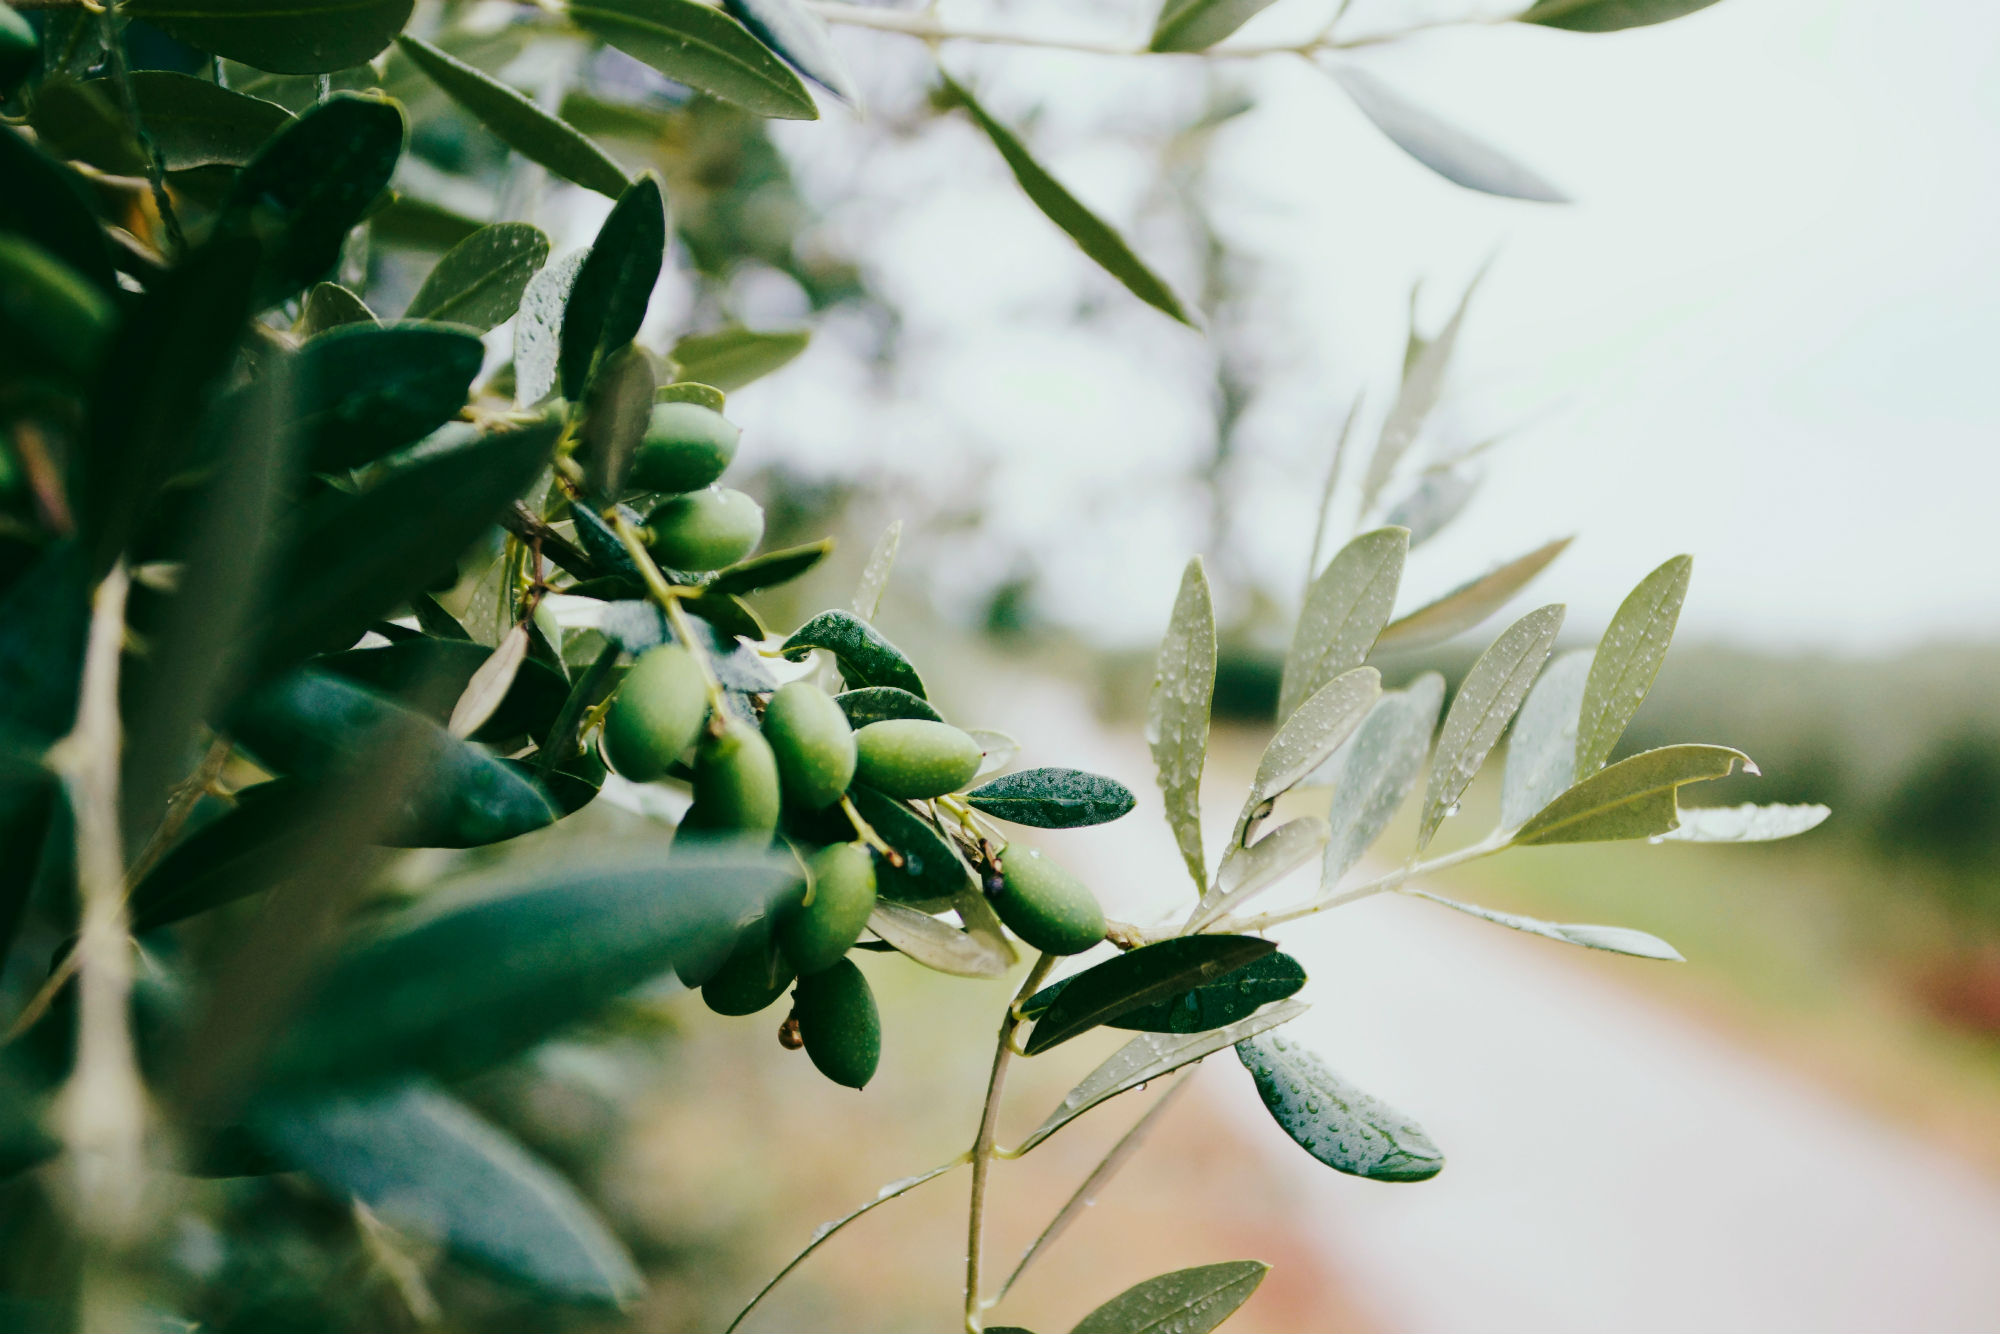 Olive Harvest (19-27 OCT 2019)